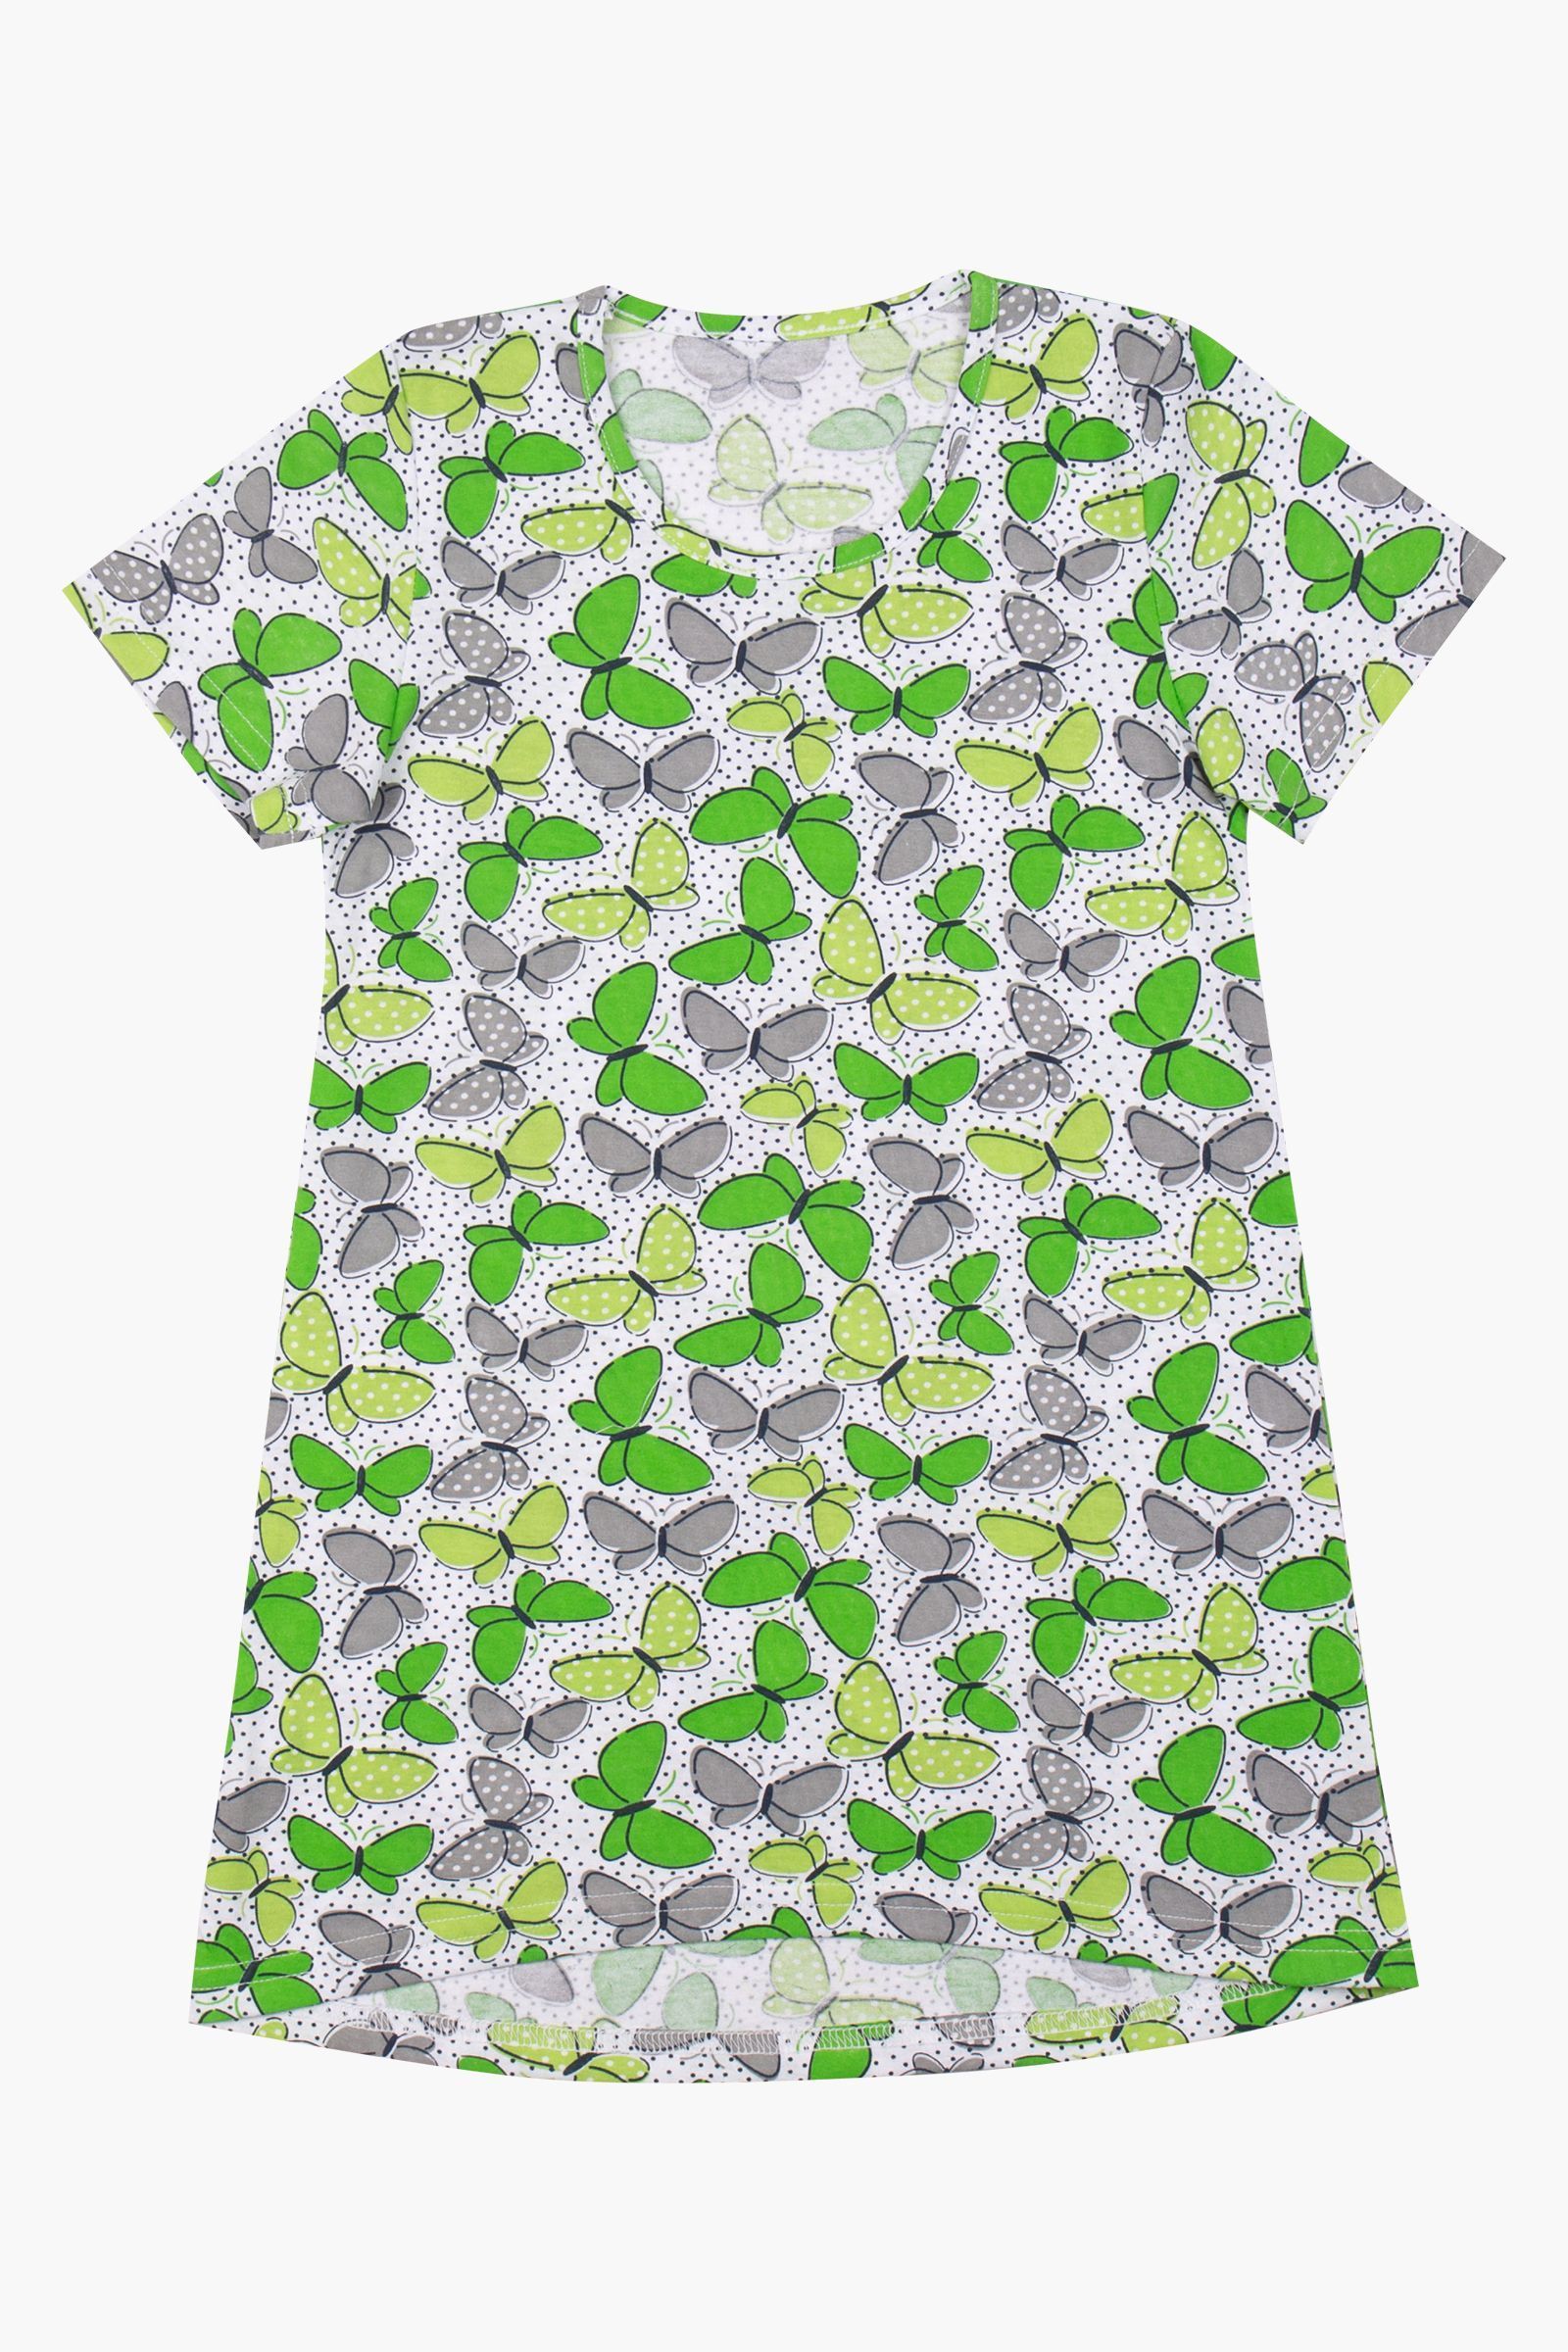 Ночная сорочка-СР02-2932а оптом от производителя детской одежды 'Алёна'